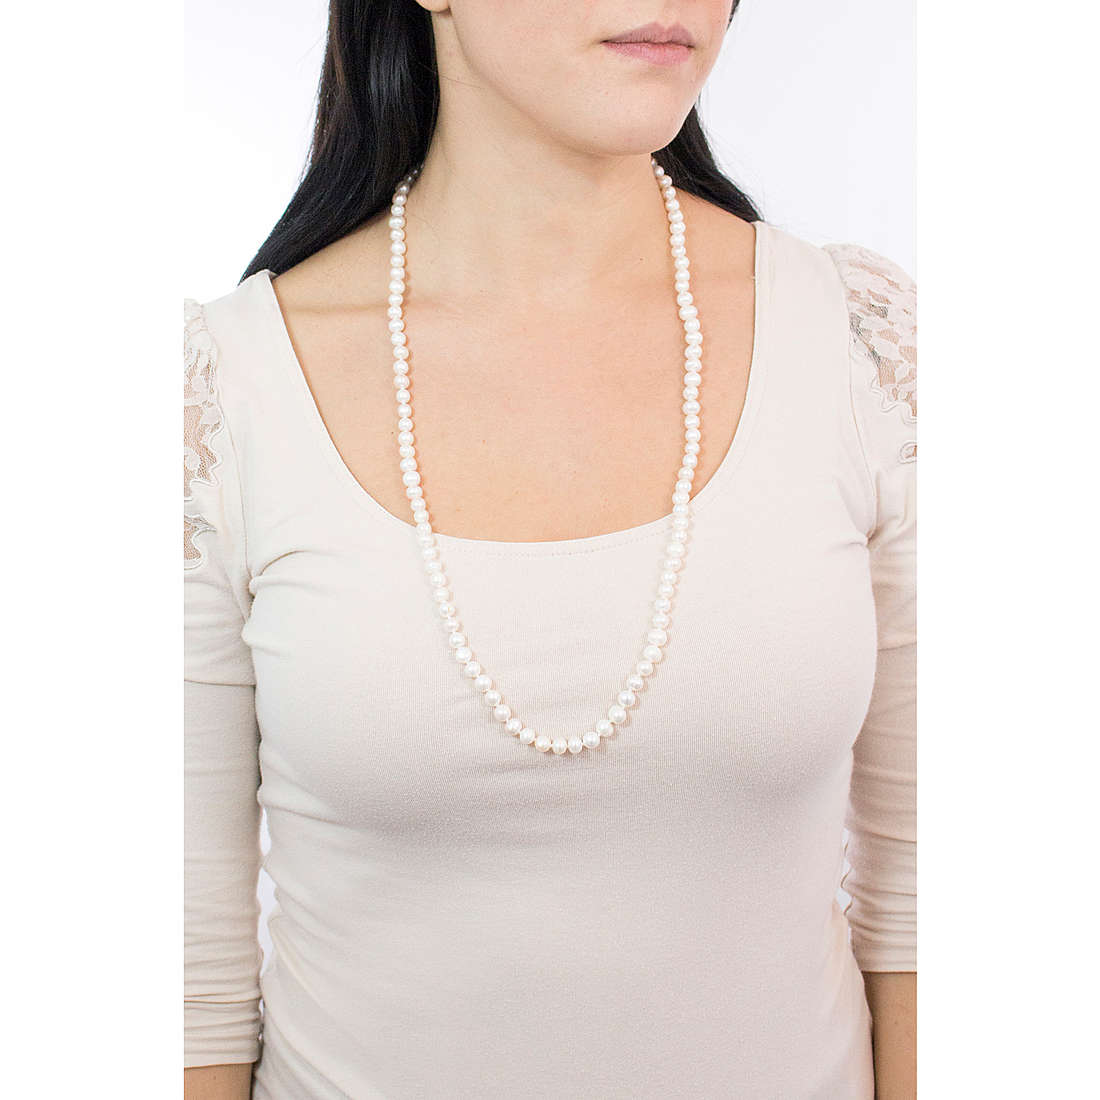 Comete necklaces Fantasia di Perle woman FBQ 113 wearing